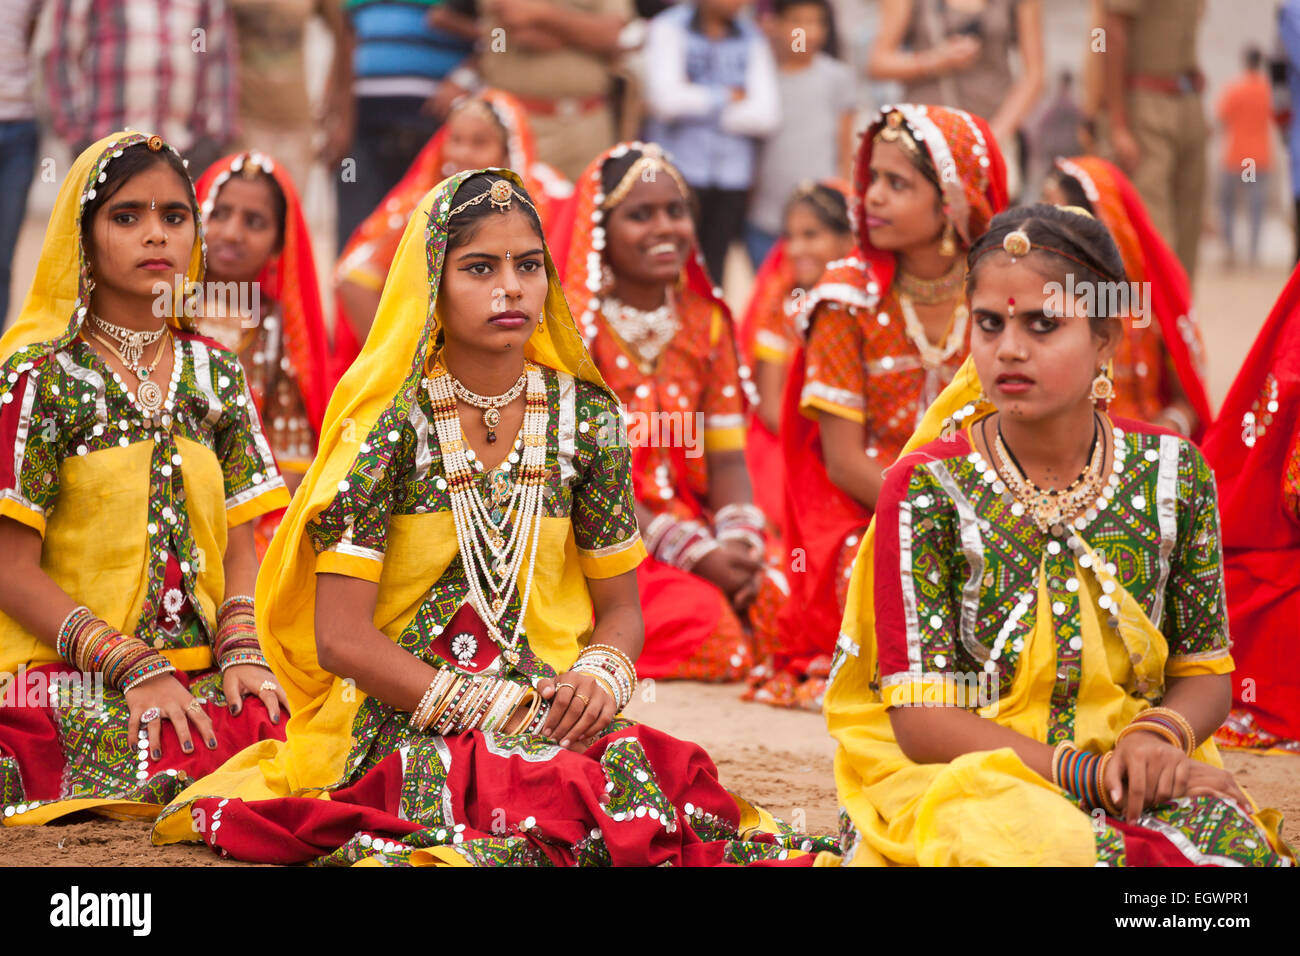 Junge Frau in ihrer typischen farbenfrohen Tracht auf dem Kamel Messe Pushkar Mela, Pushkar, Rajasthan, Indien, Asien Stockfoto